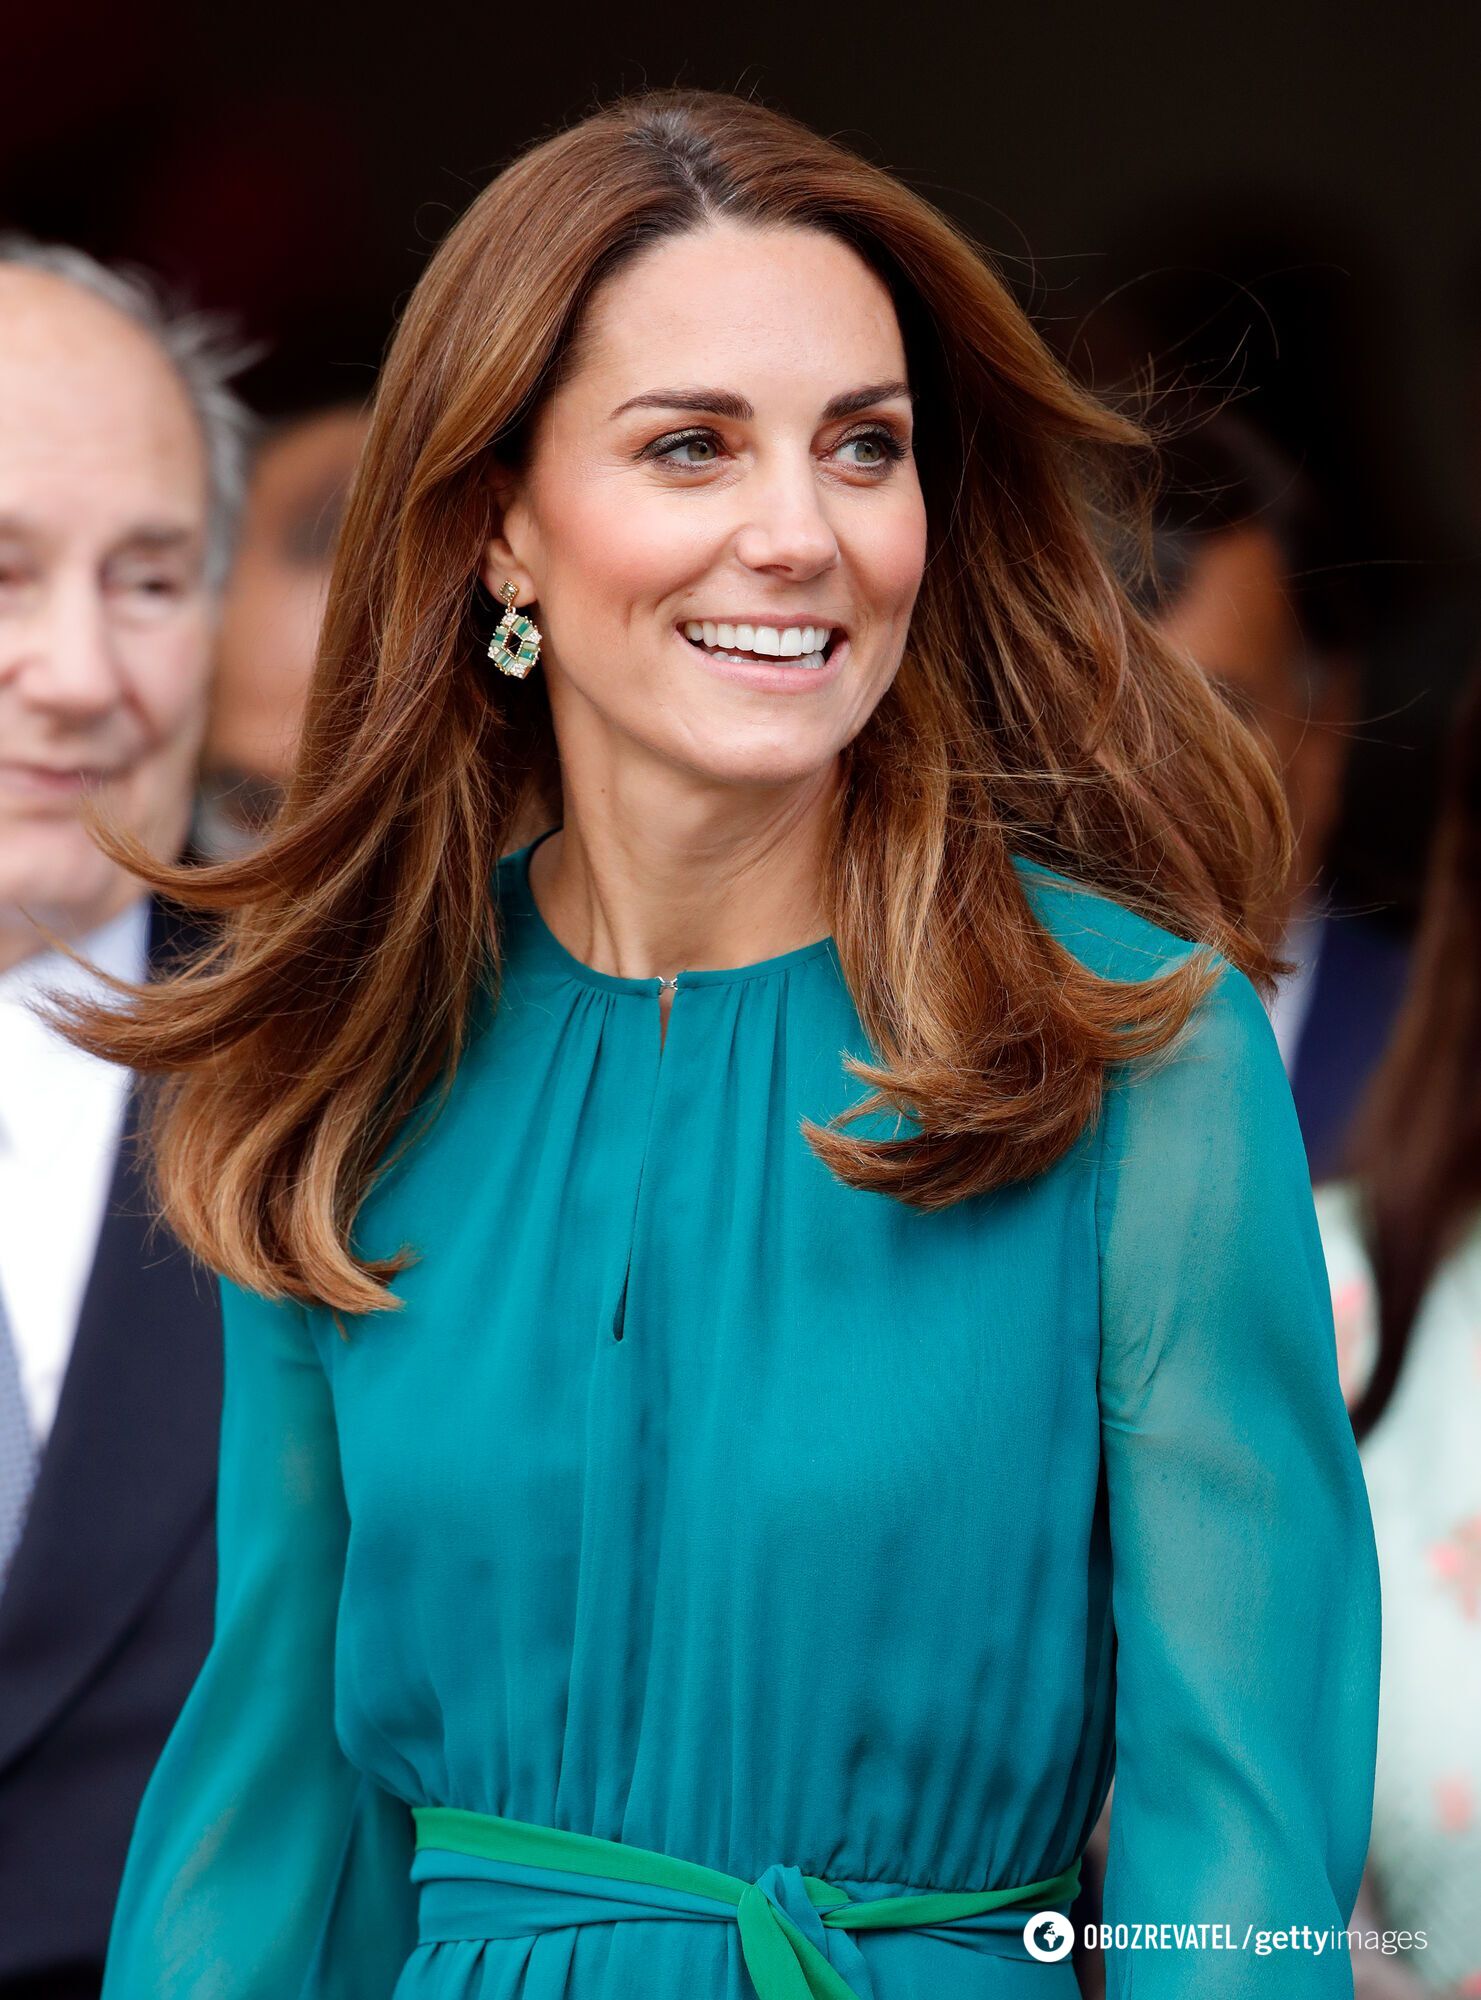 Srebro we włosach: Kate Middleton, Jennifer Lopez i inne gwiazdy, które wcześnie zaczęły siwieć